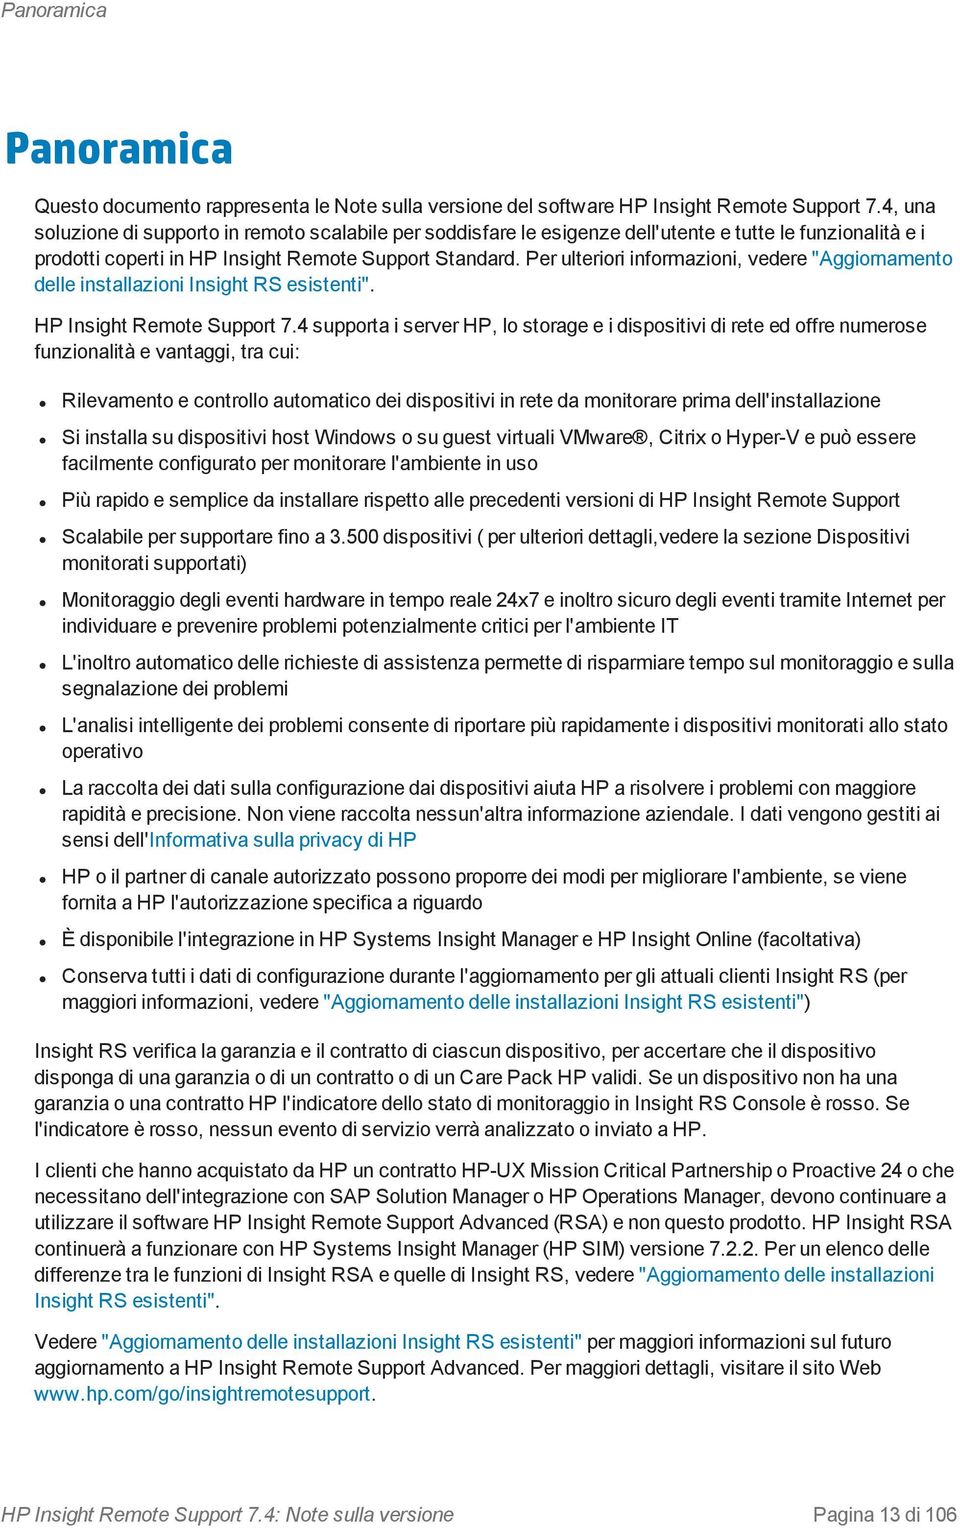 Per ulteriori informazioni, vedere "Aggiornamento delle installazioni Insight RS esistenti". HP Insight Remote Support 7.